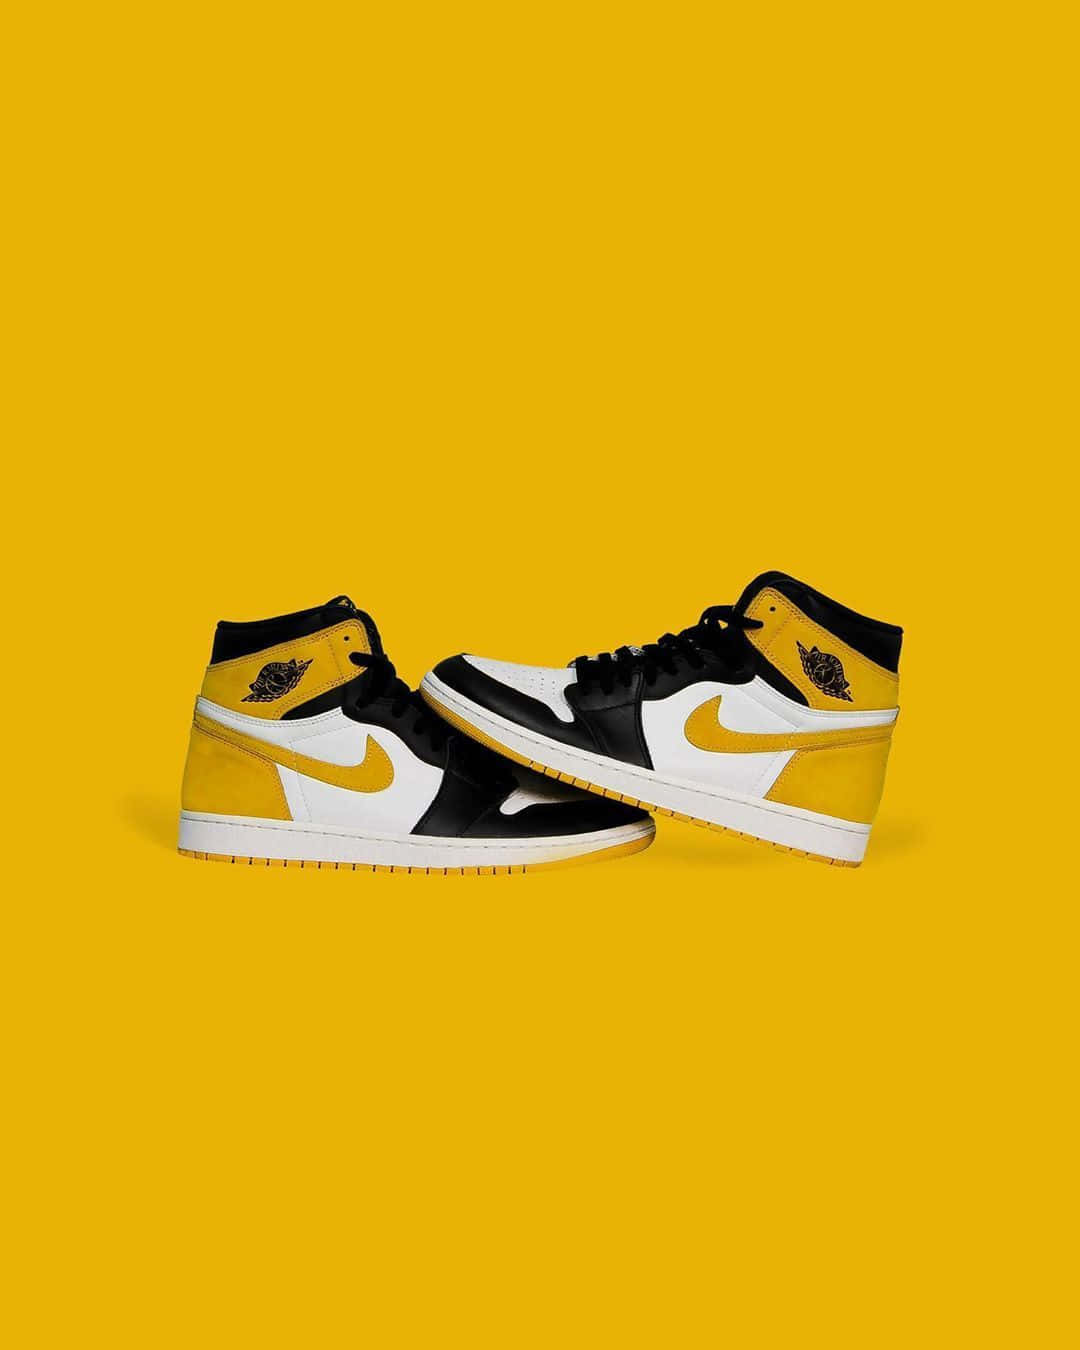 Nyfrizet ud af boksen, den ikoniske gul og sorte Jordan. Wallpaper